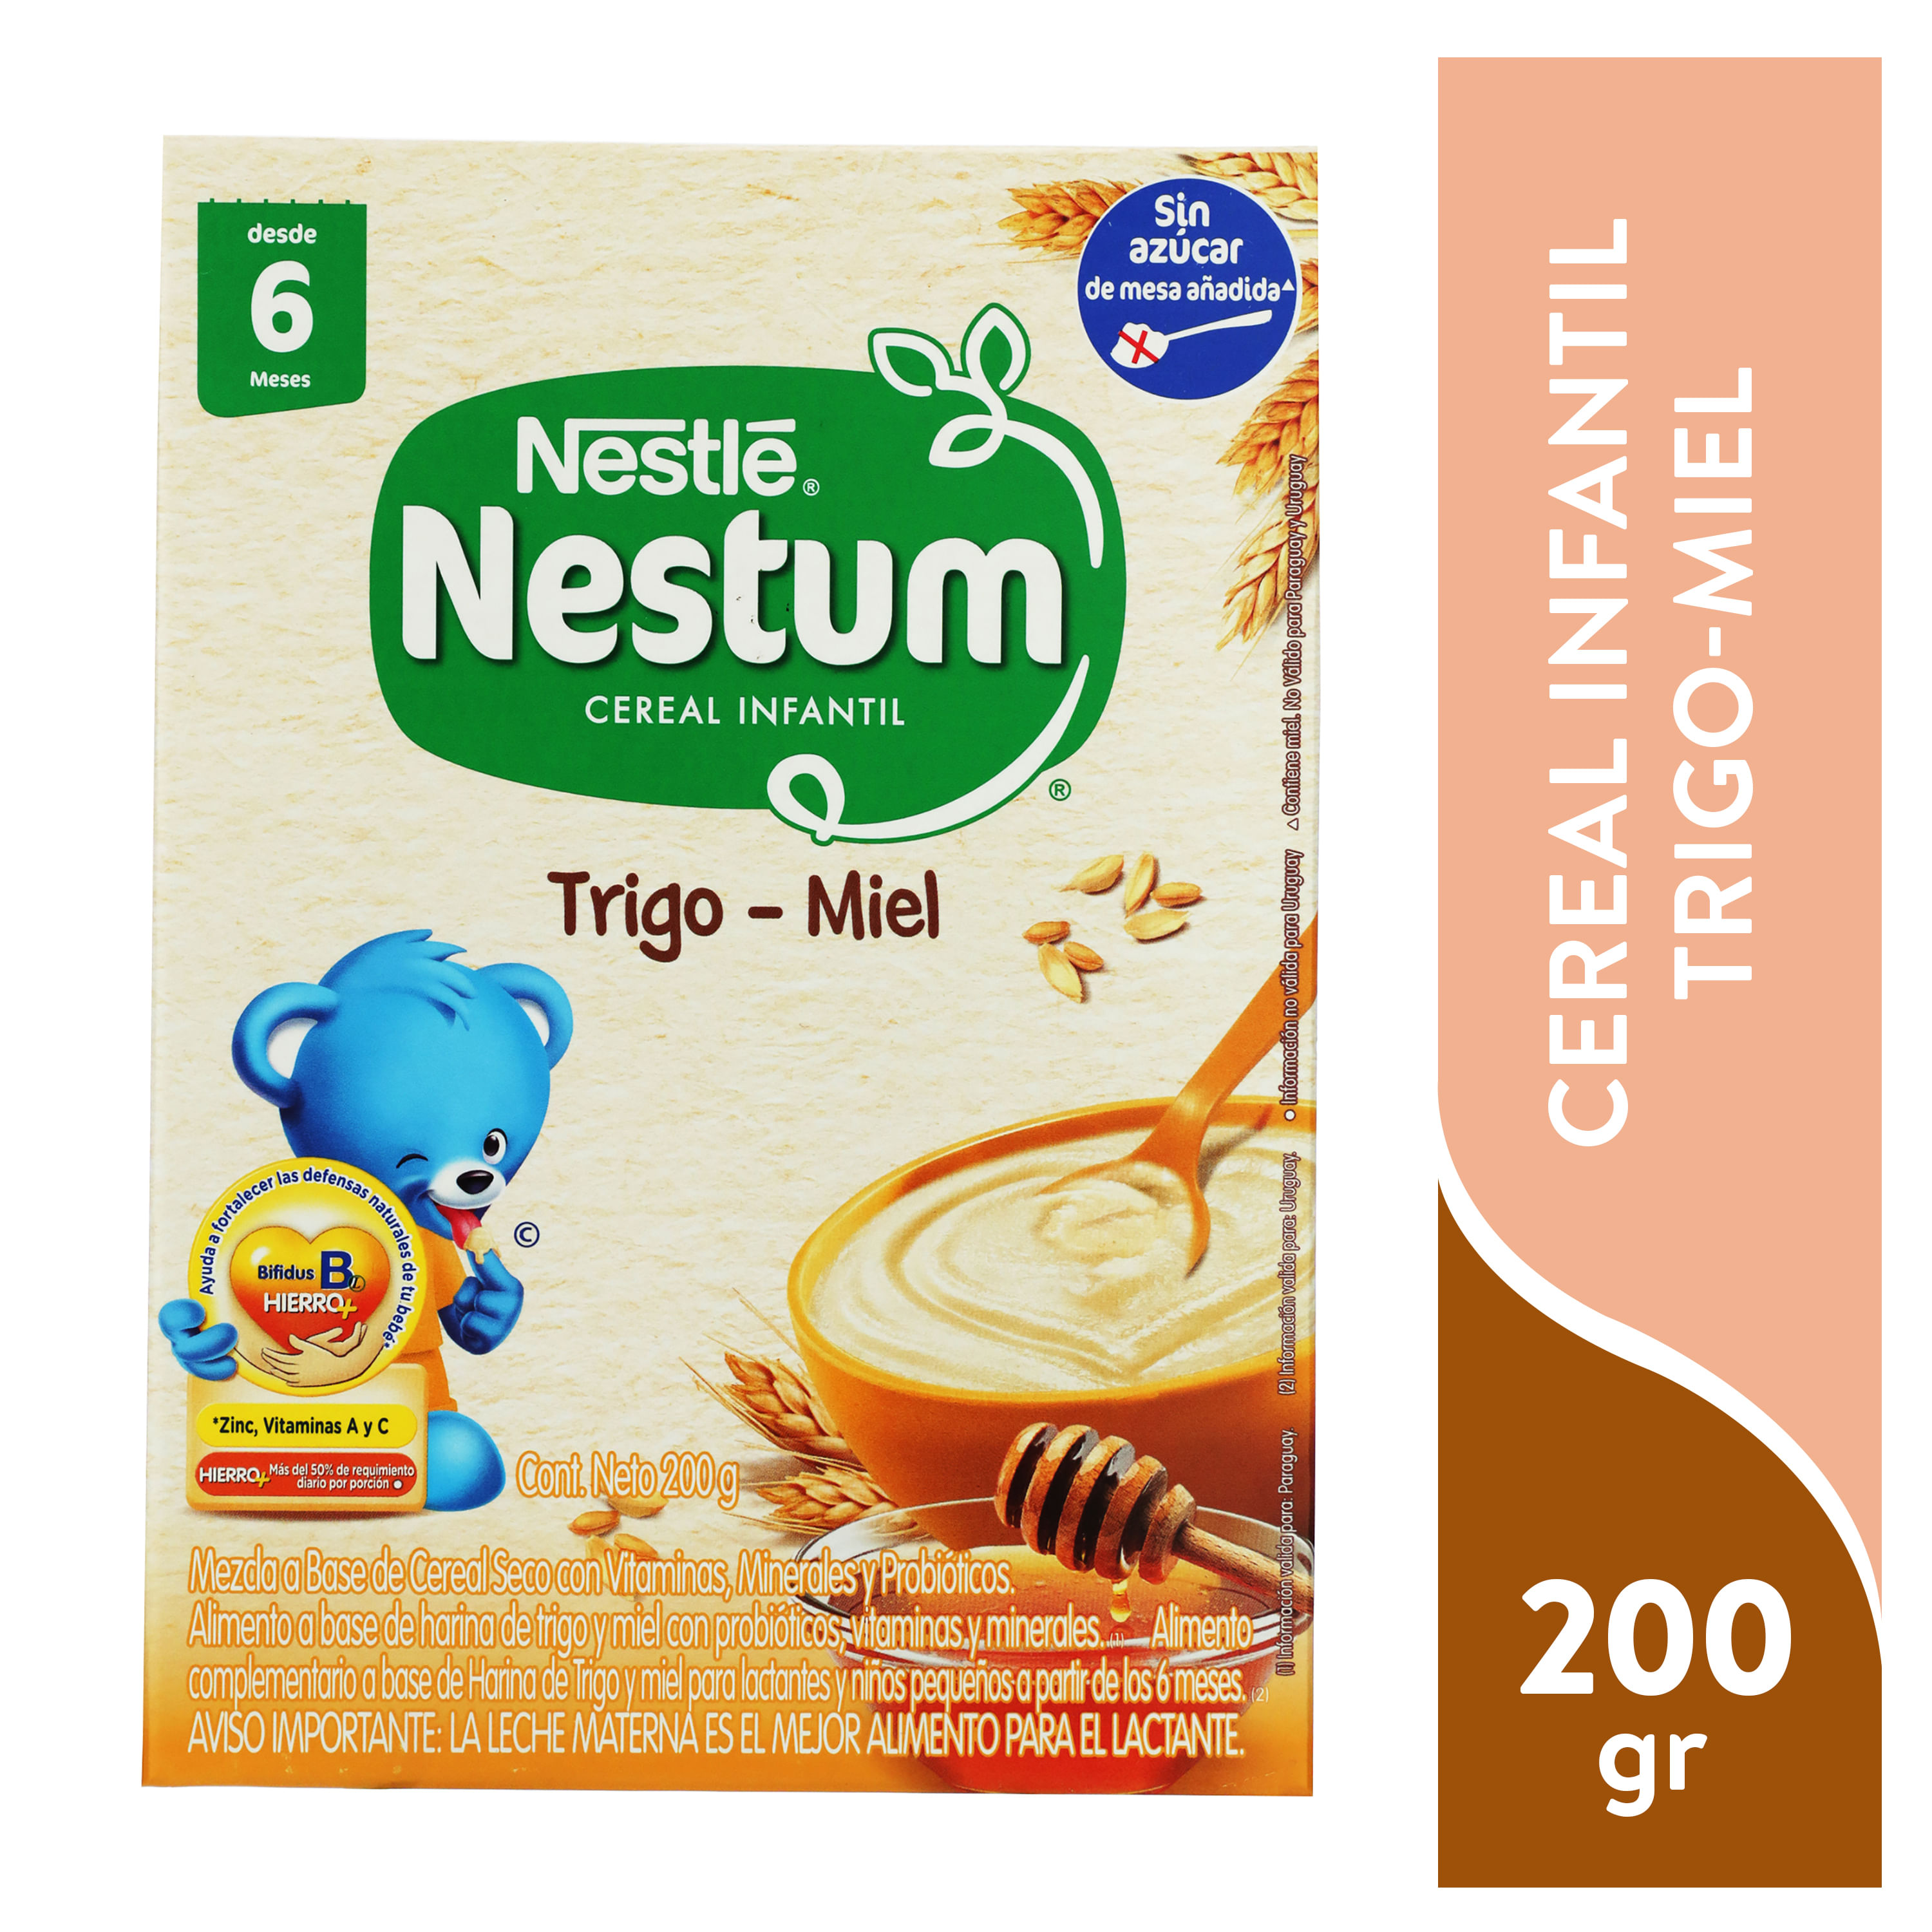 NESTUM-Trigo-Miel-Cereal-Infantil-Caja-200g-1-10184